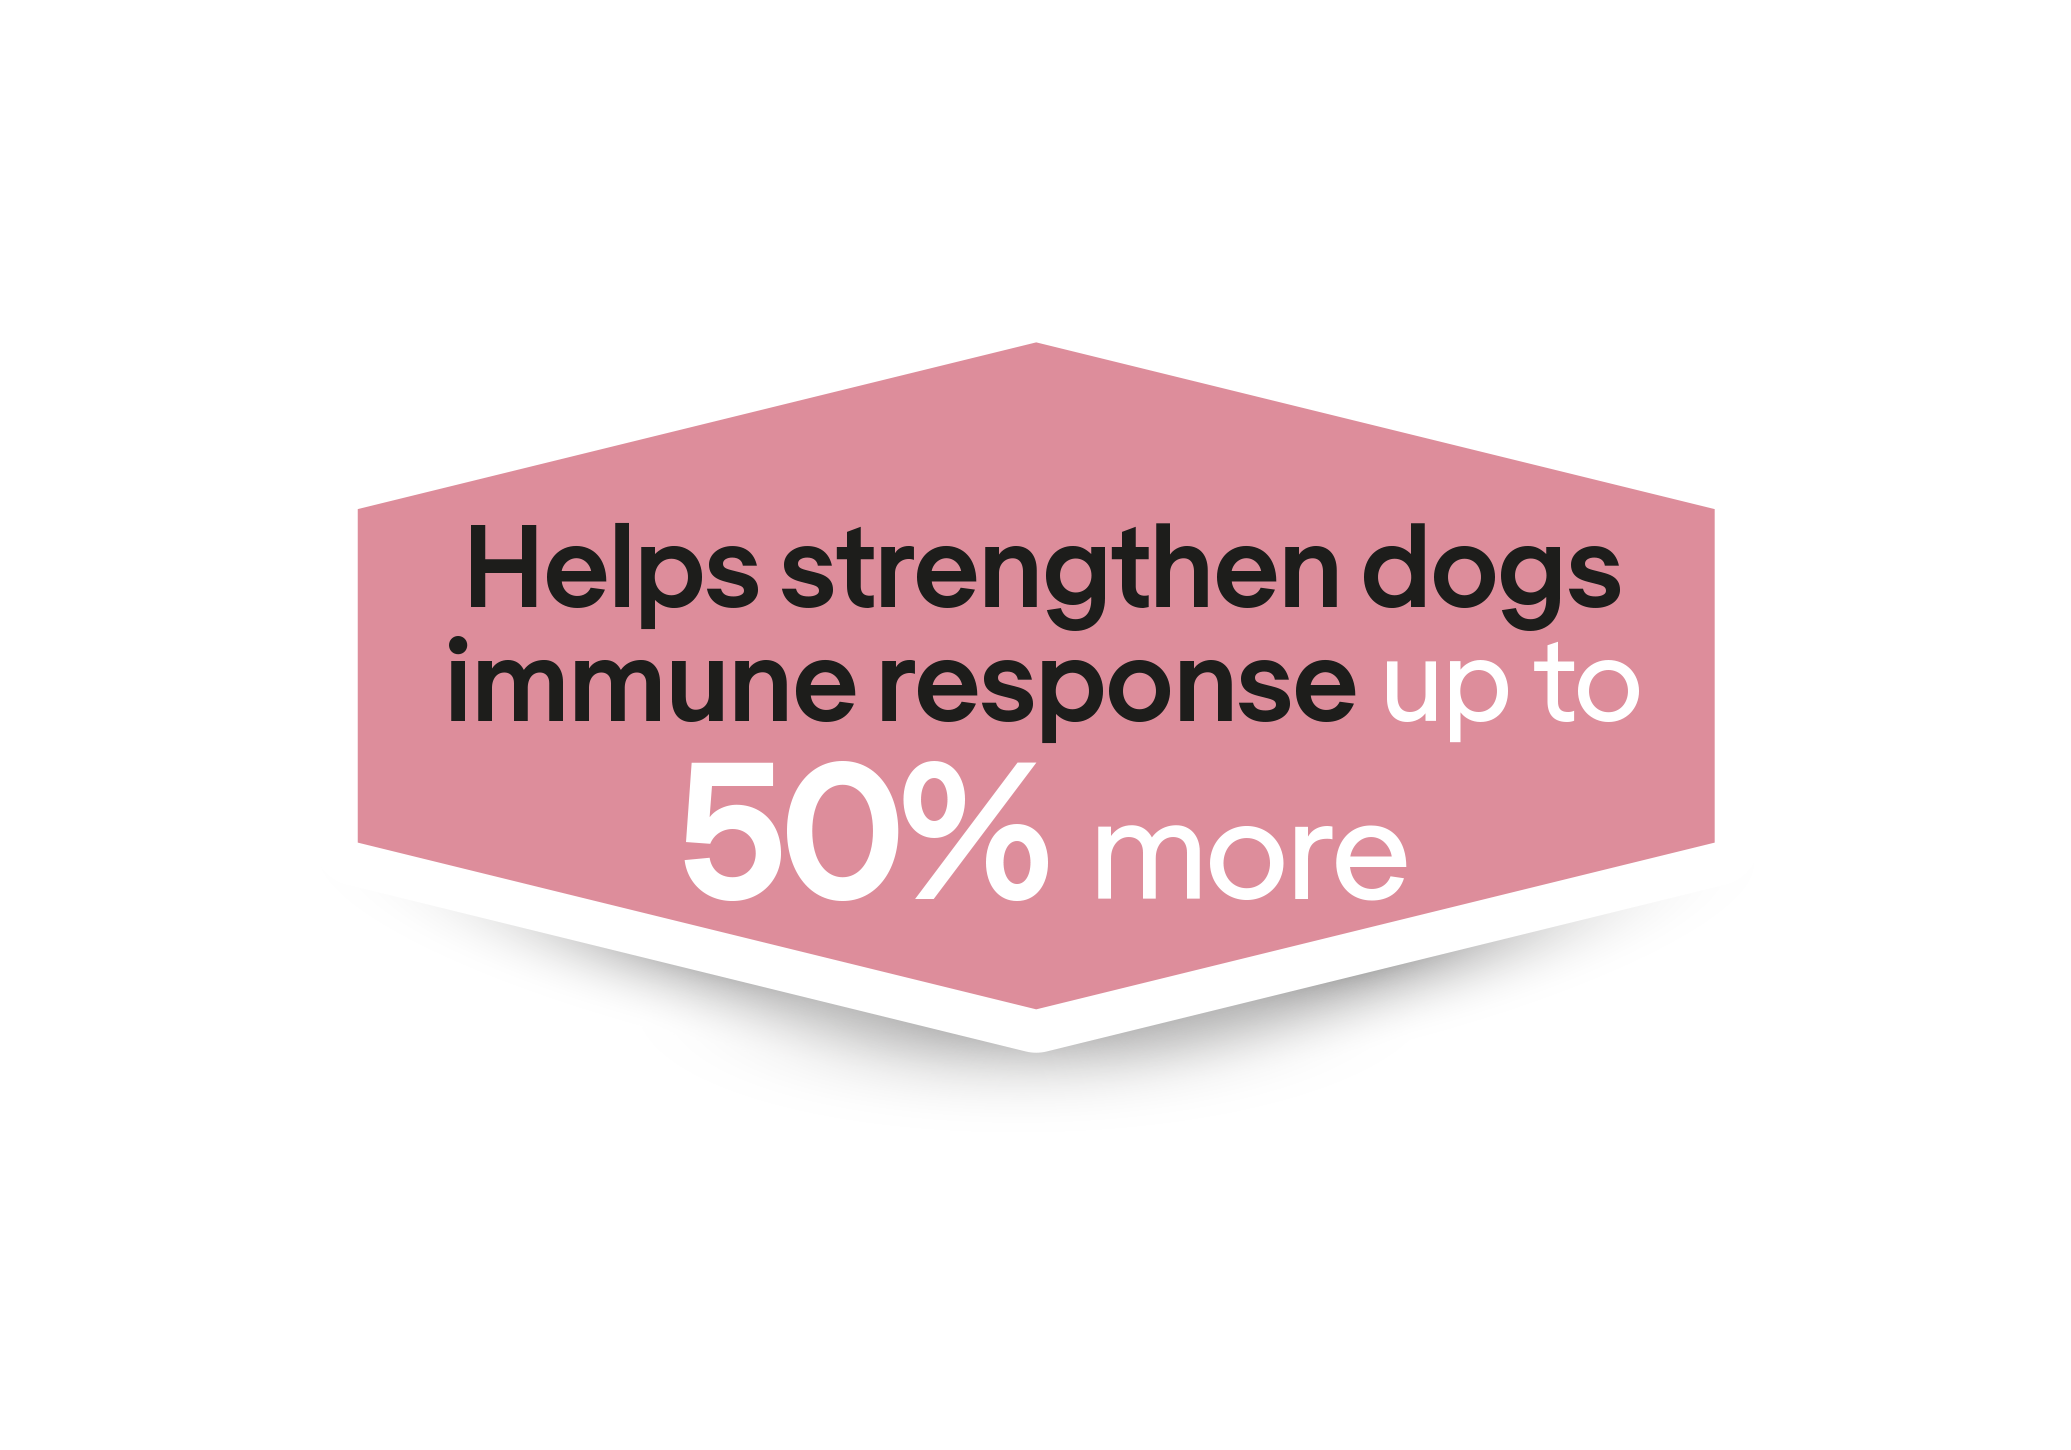  Ayuda a reforzar la respuesta inmunitaria de los cachorros hasta un 50% más